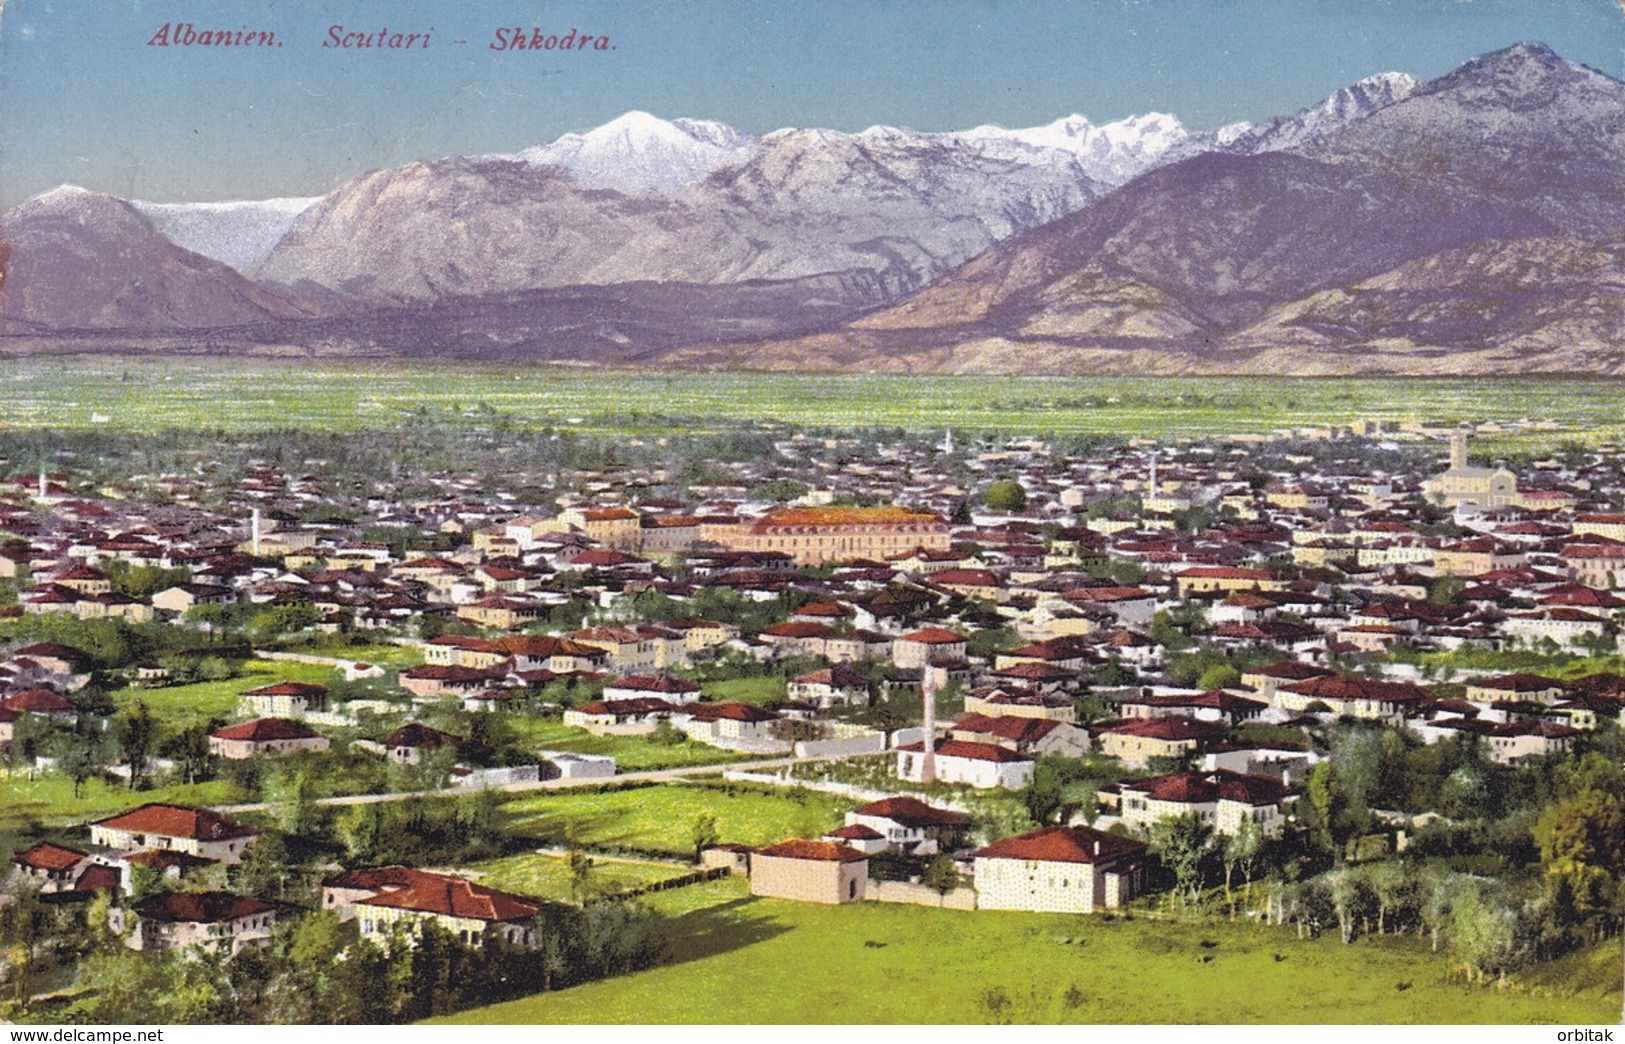 Shkodra (Scutari) * Gesamtansicht * Albanien * AK1545 - Albania